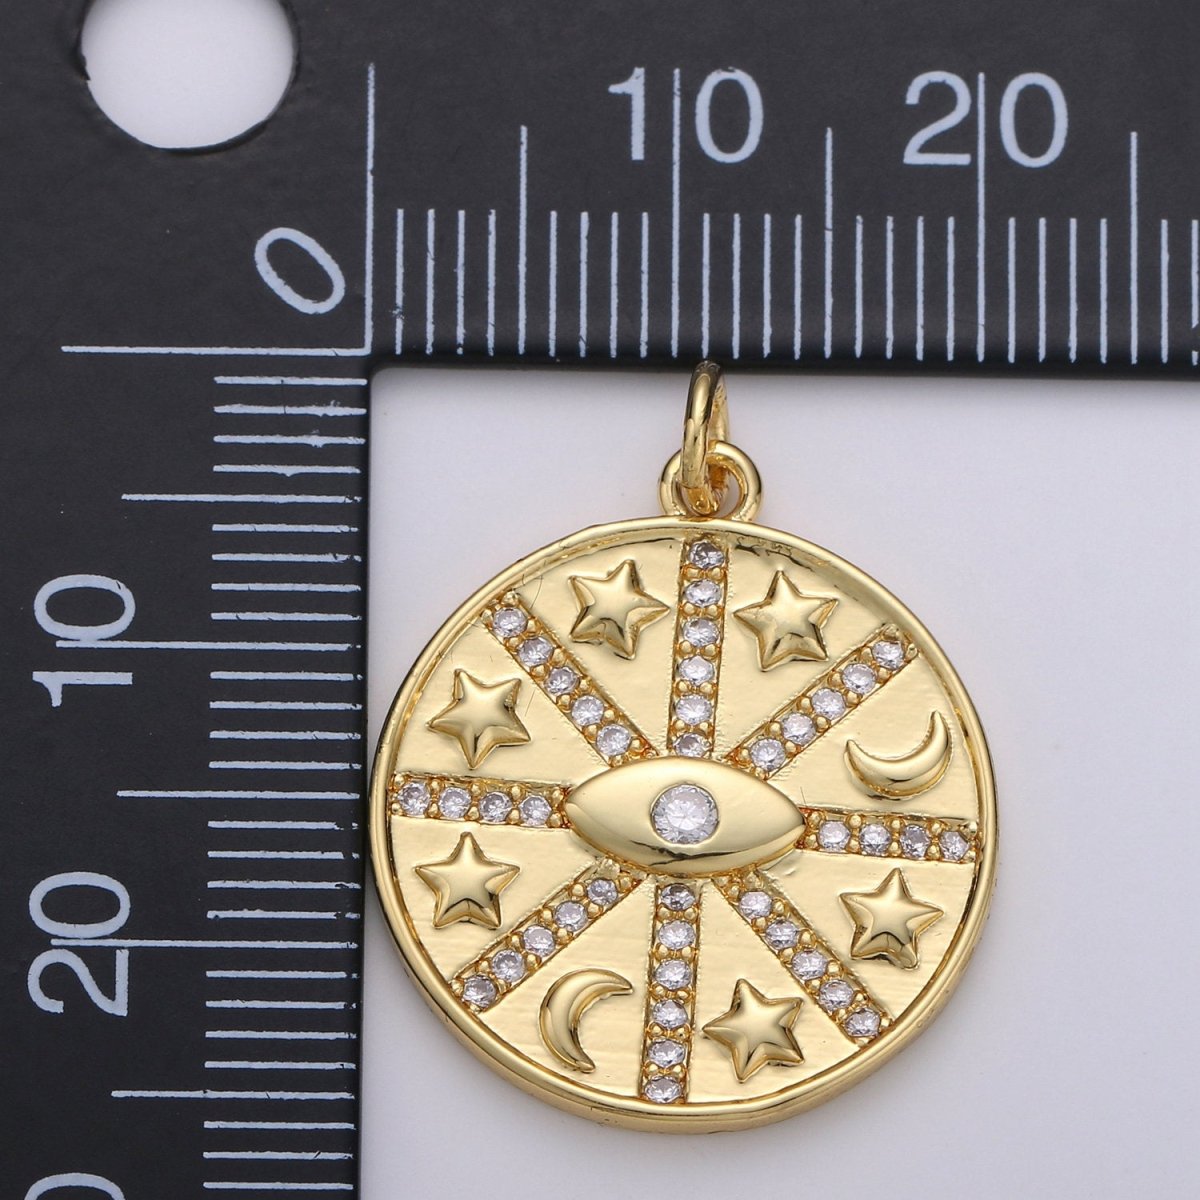 Medallion lucky Charm ,24K Gold Filled medallion,Medallion lucky charm,Medallion pendant,Elephant luck,horseshoe luck,Irish luck medallion D-478 - DLUXCA